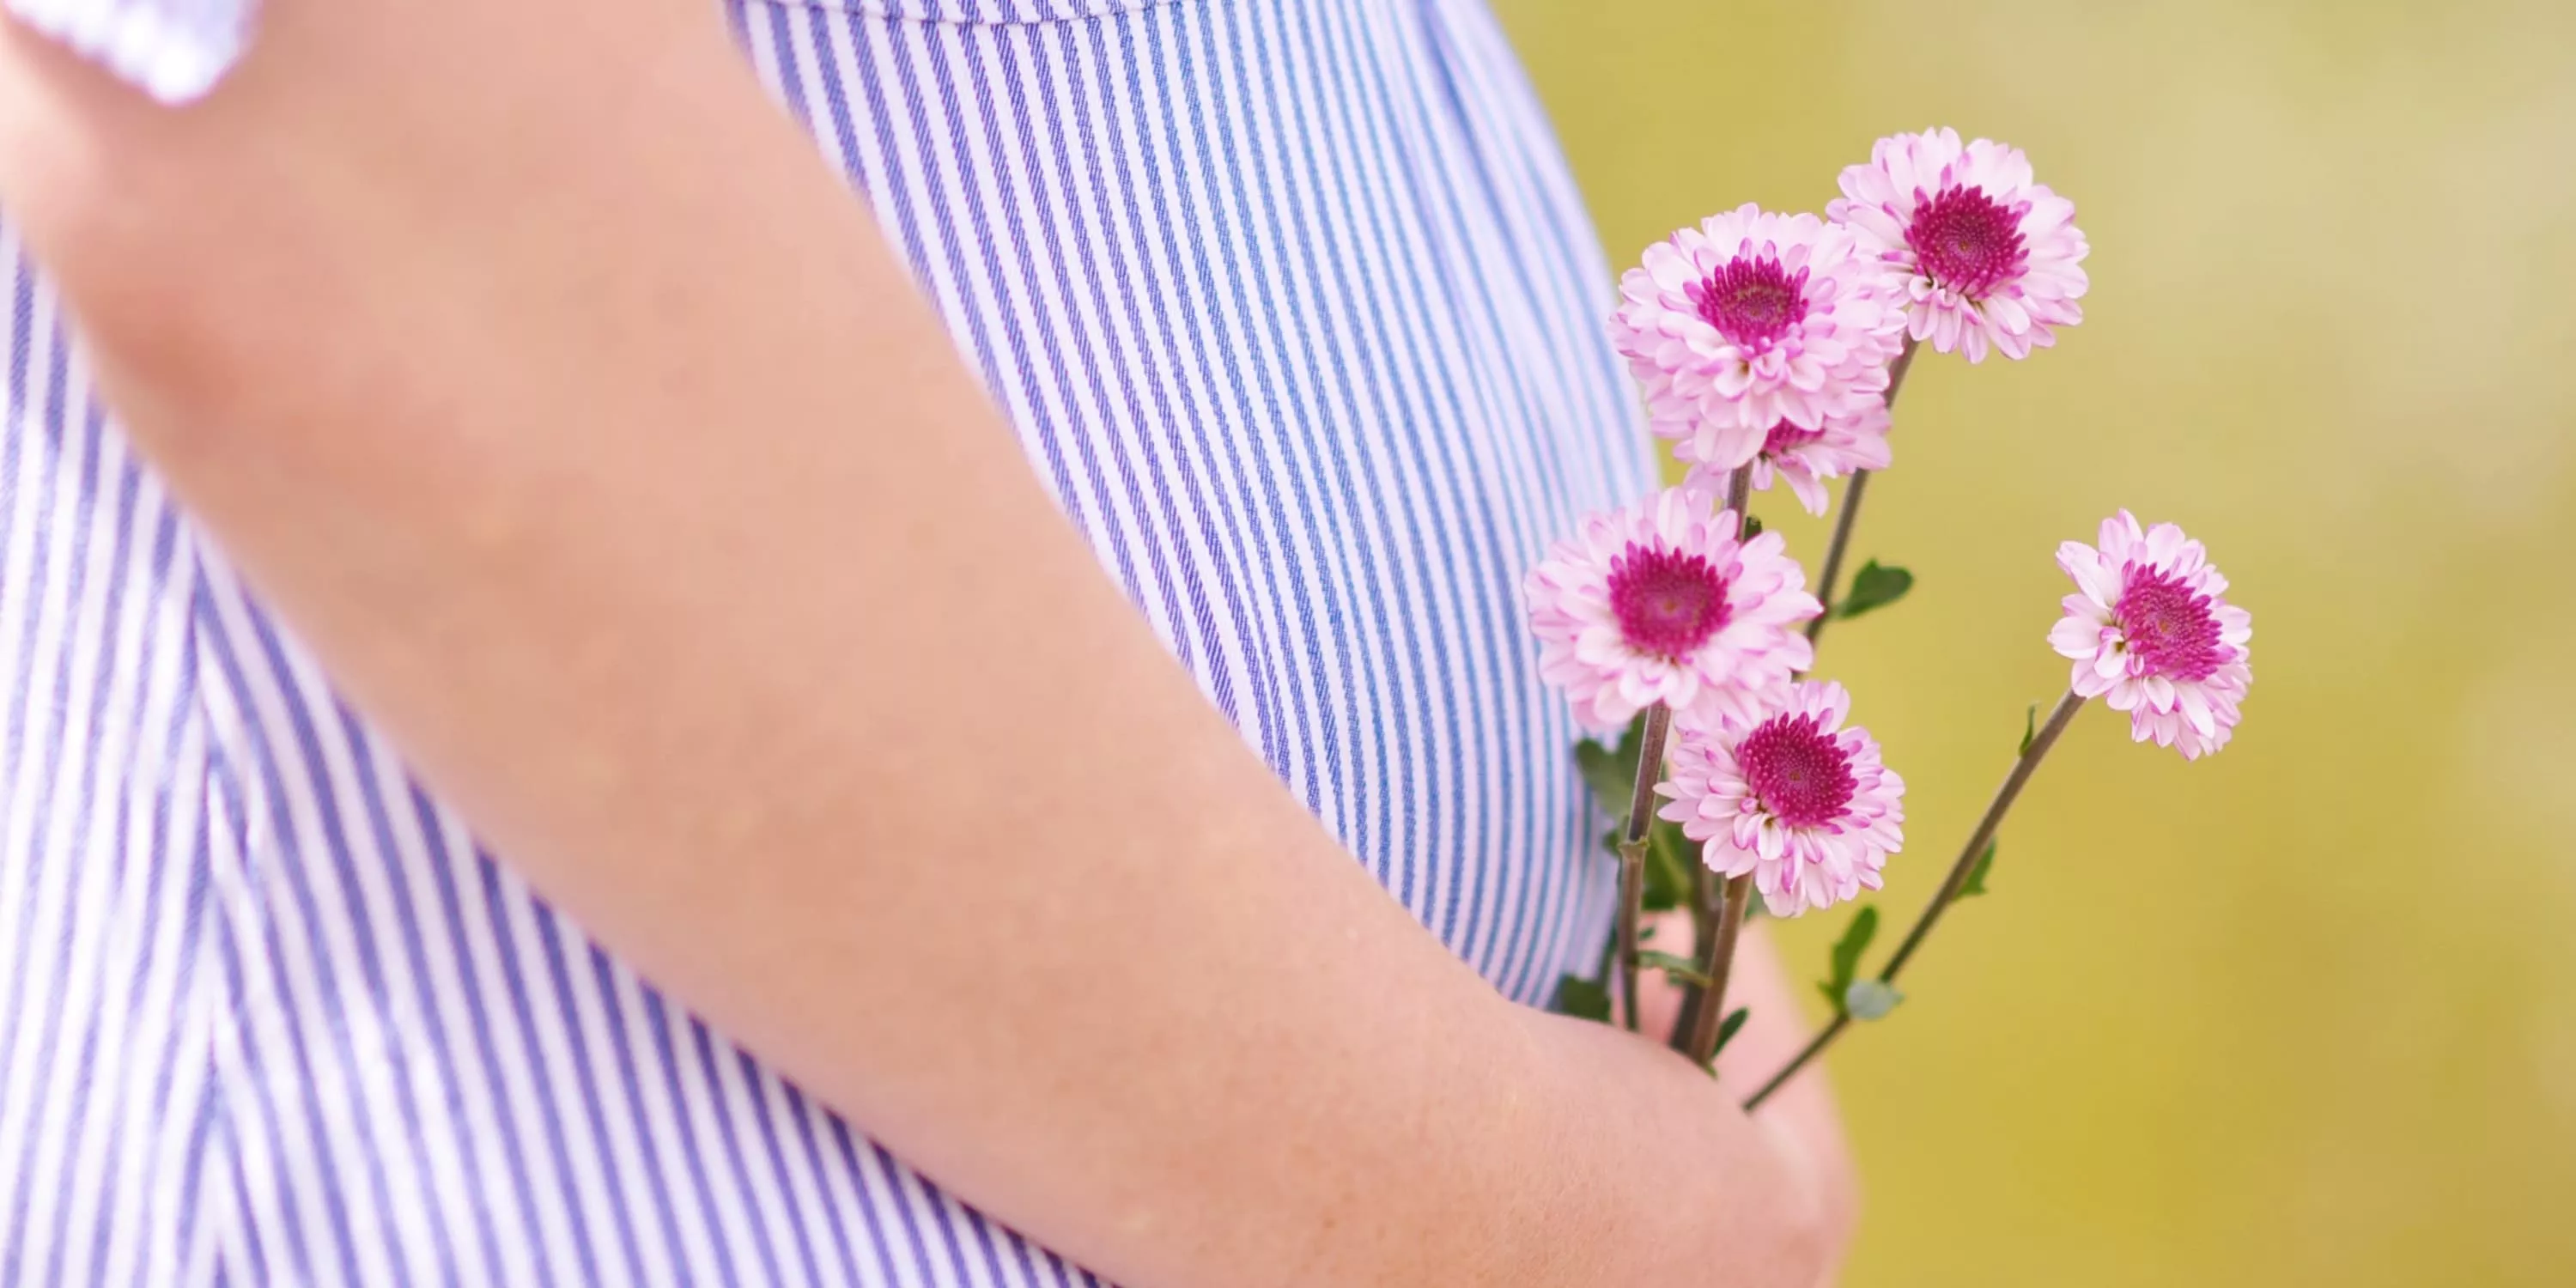 Een detailfoto van een babybuik van een zwangere vrouw die bloemetjes vasthoudt.